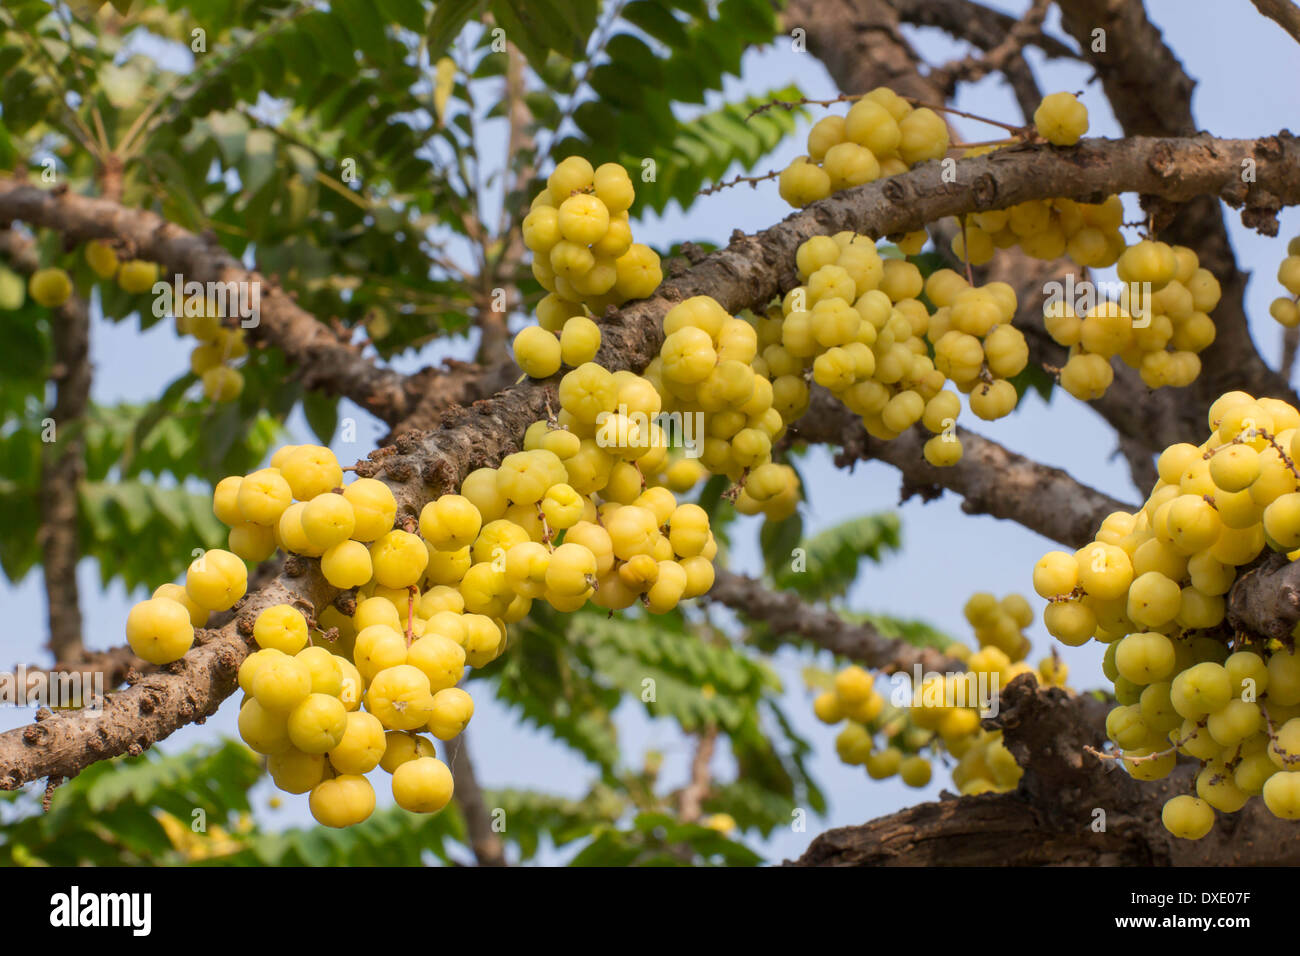 Star Gosseberry Phyllanthus acidus tree Stock Photo